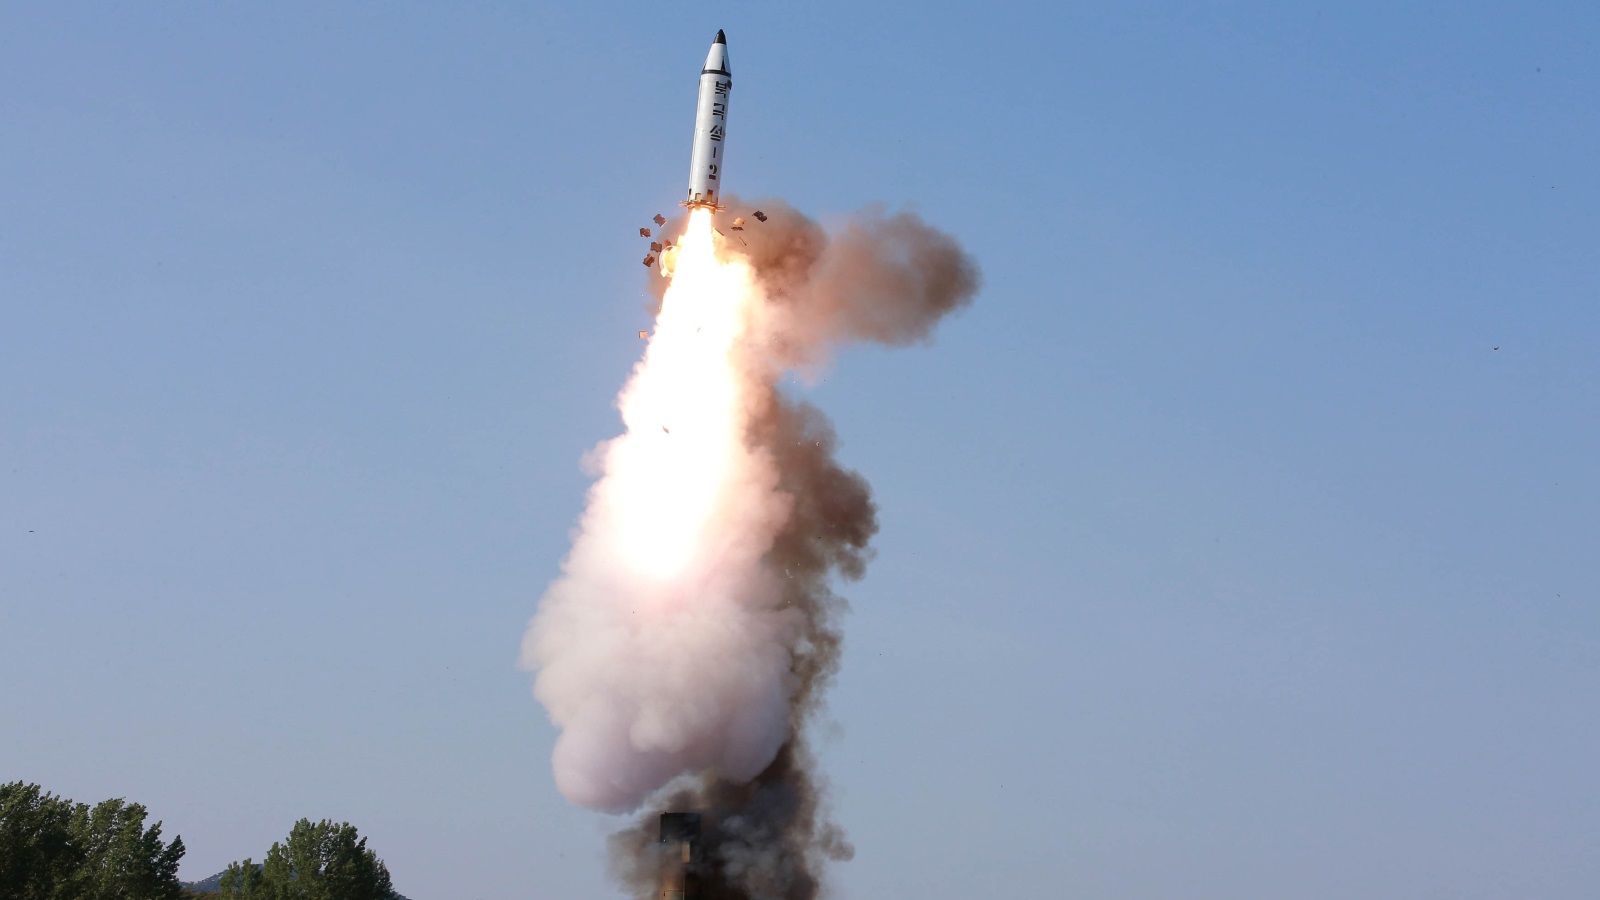 صورة نشرتها وكالة الأنباء الكورية الشمالية لإحدى التجارب الصاروخية الأخيرة